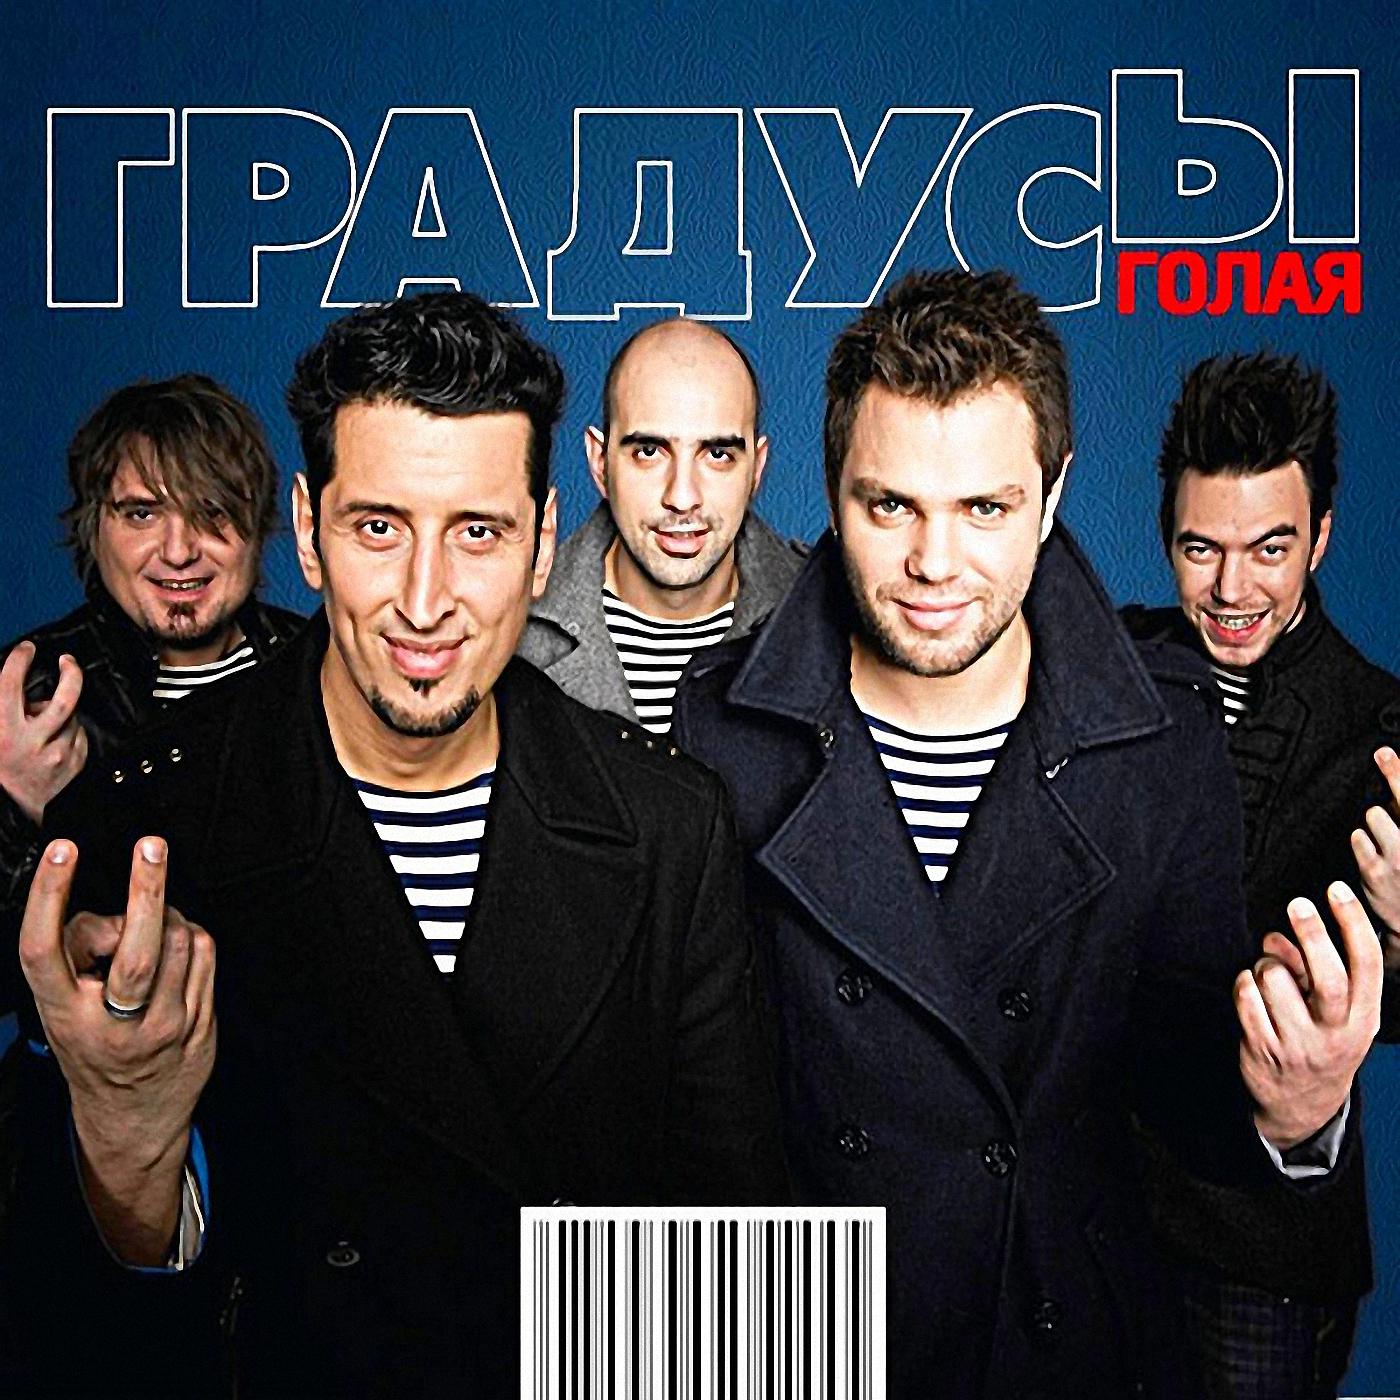 Русские поп-хиты 2010-х - сборник новинок, слушать плейлист онлайн бесплатно  на Zvuk.com